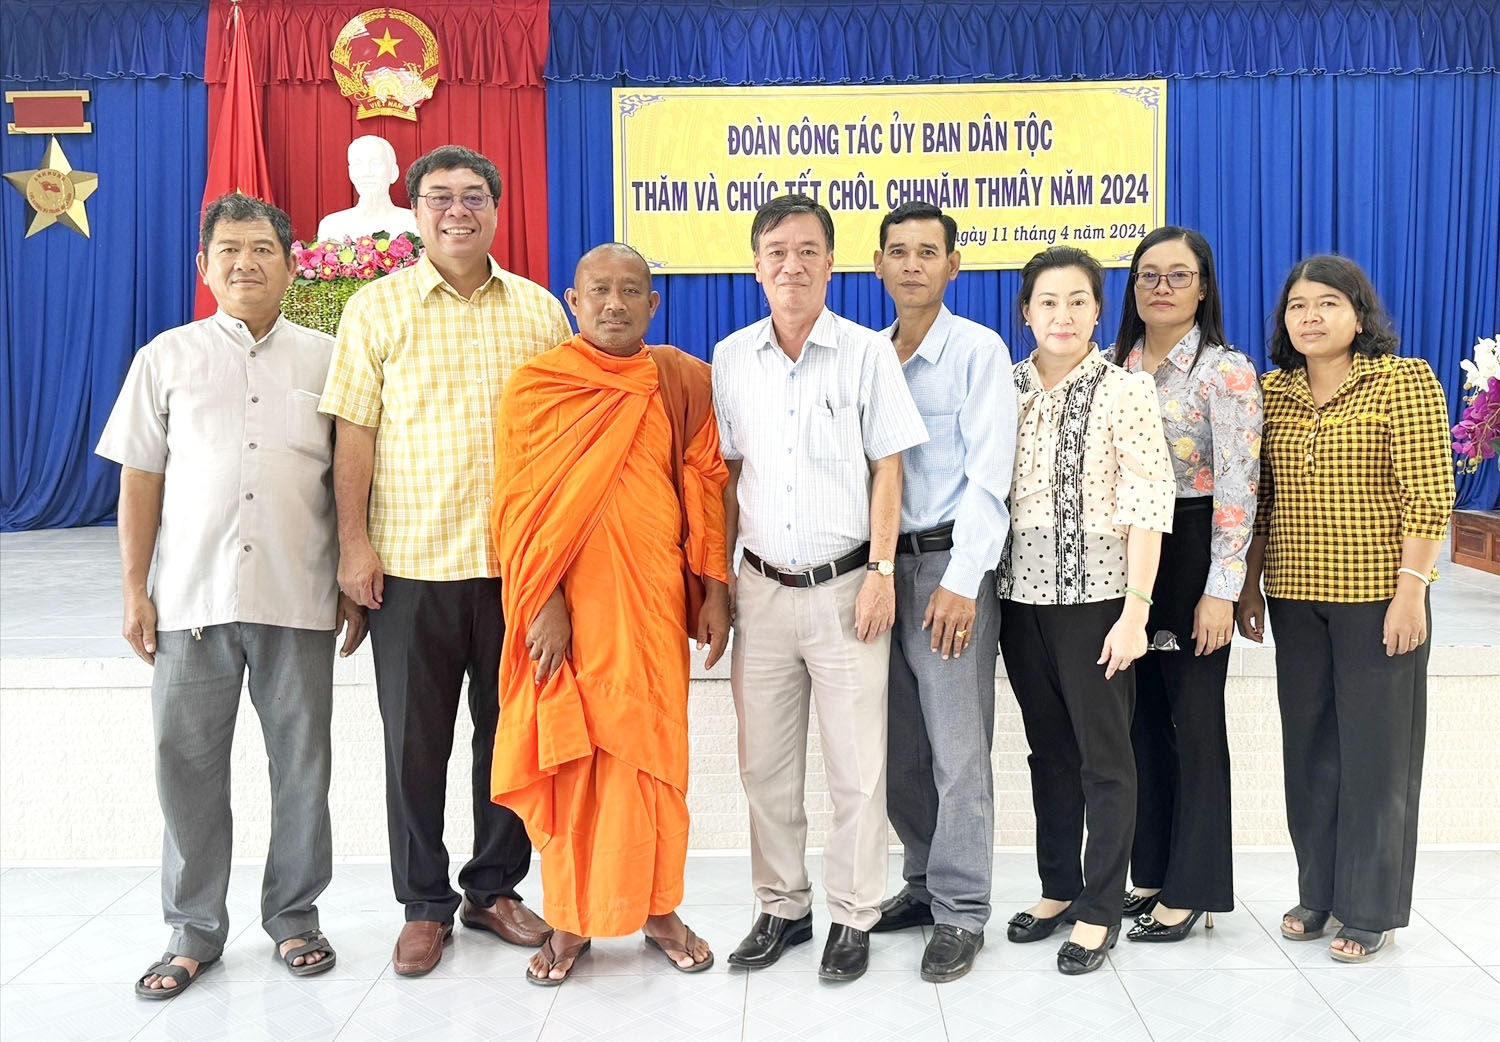 Đoàn công tác chụp ảnh lưu niệm cùng lãnh đạo huyện và Người có uy tín tiêu biểu của huyện Tri tôn